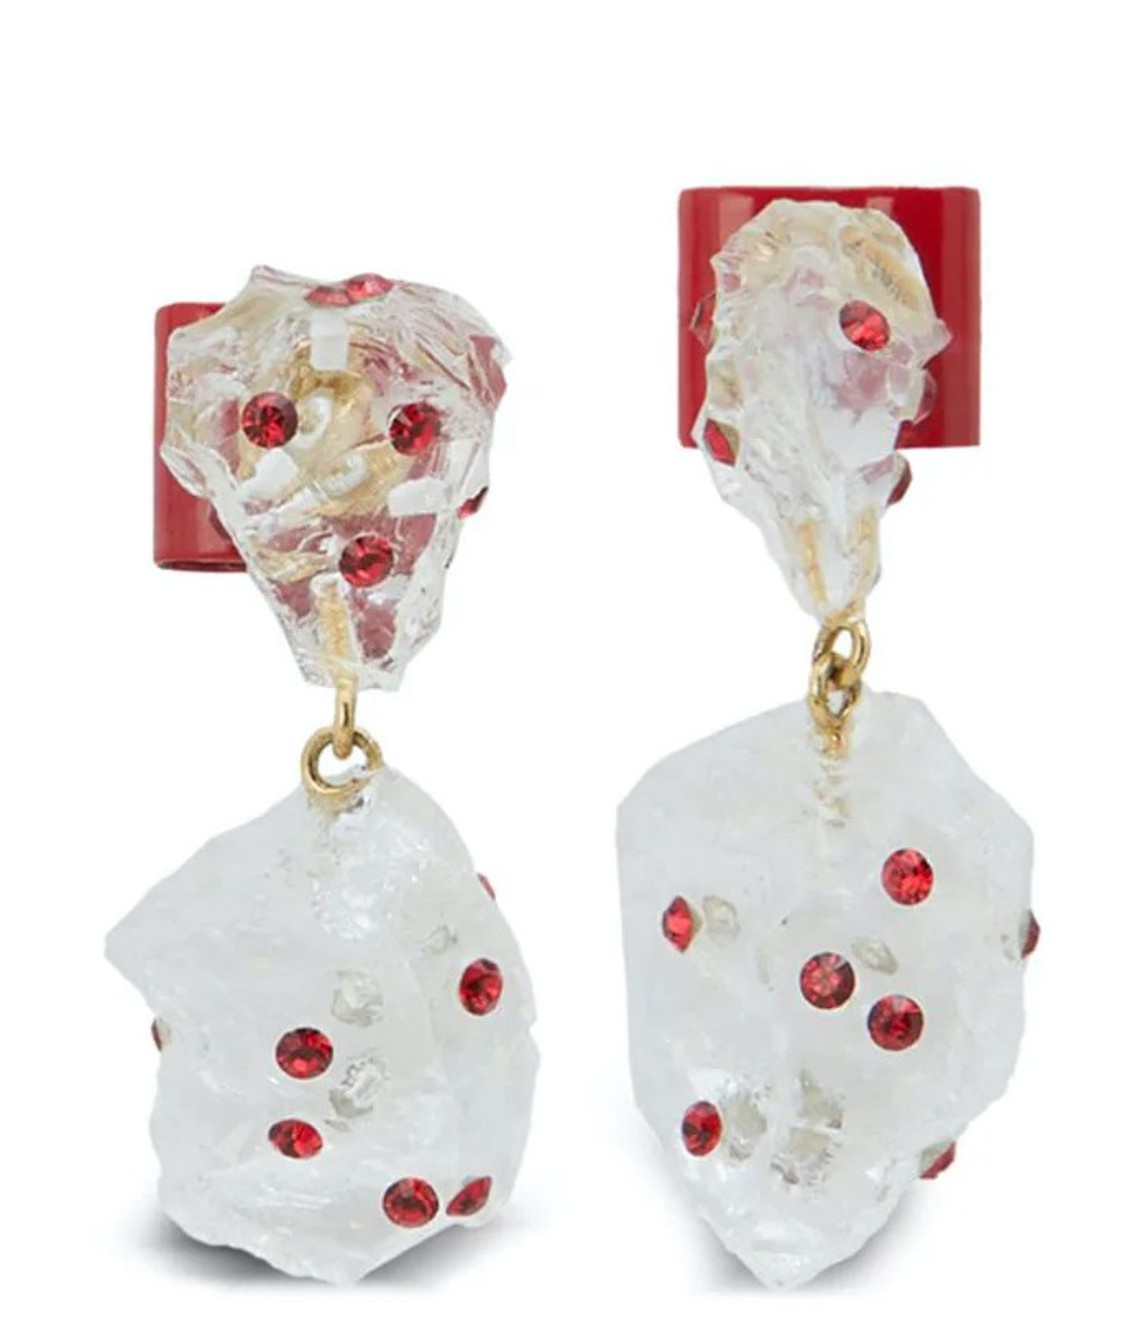 shop Marni  Bijoux: Bijoux Marni, orecchini, pendenti, inossidiana trasparente e cristalli rossi, chiusura posteriore con farfallina.

 number 2654